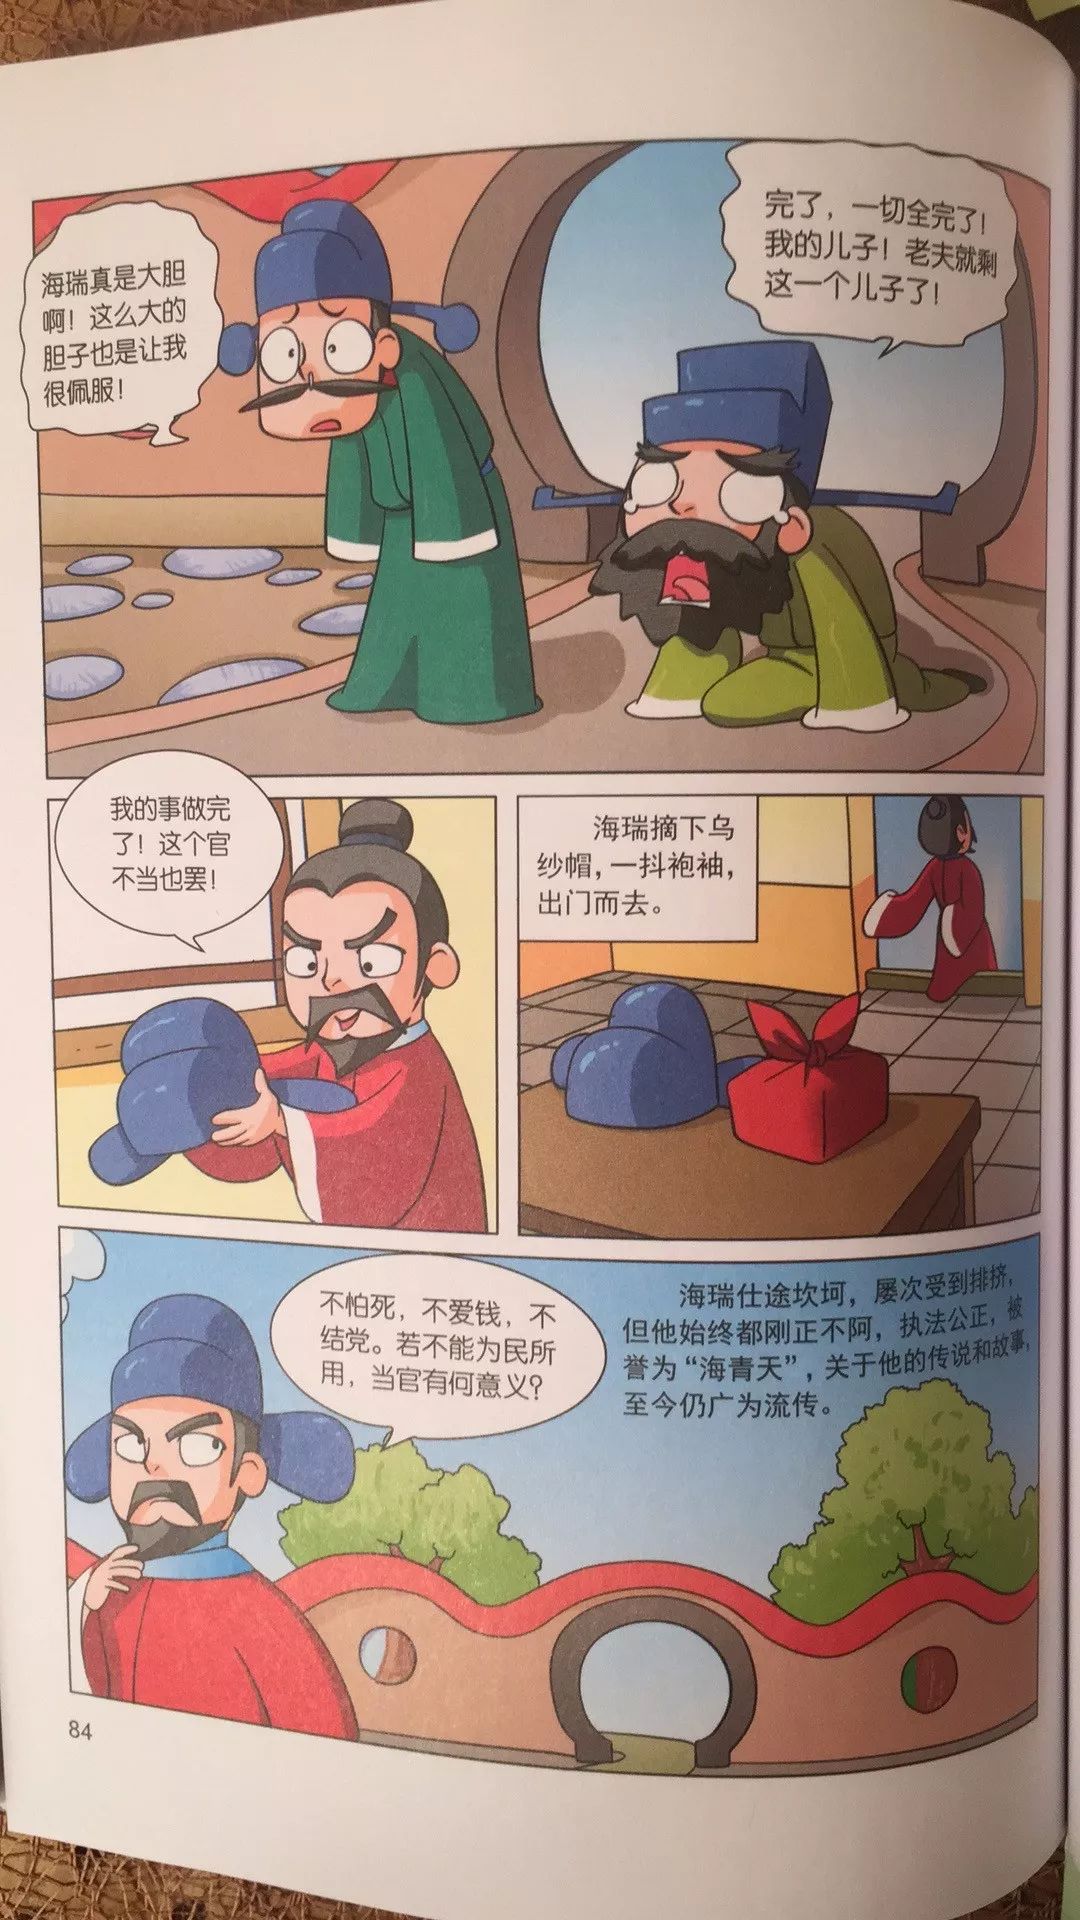 上下五千年的历史故事为主要内容,采用漫画的表达形式演绎中国历史